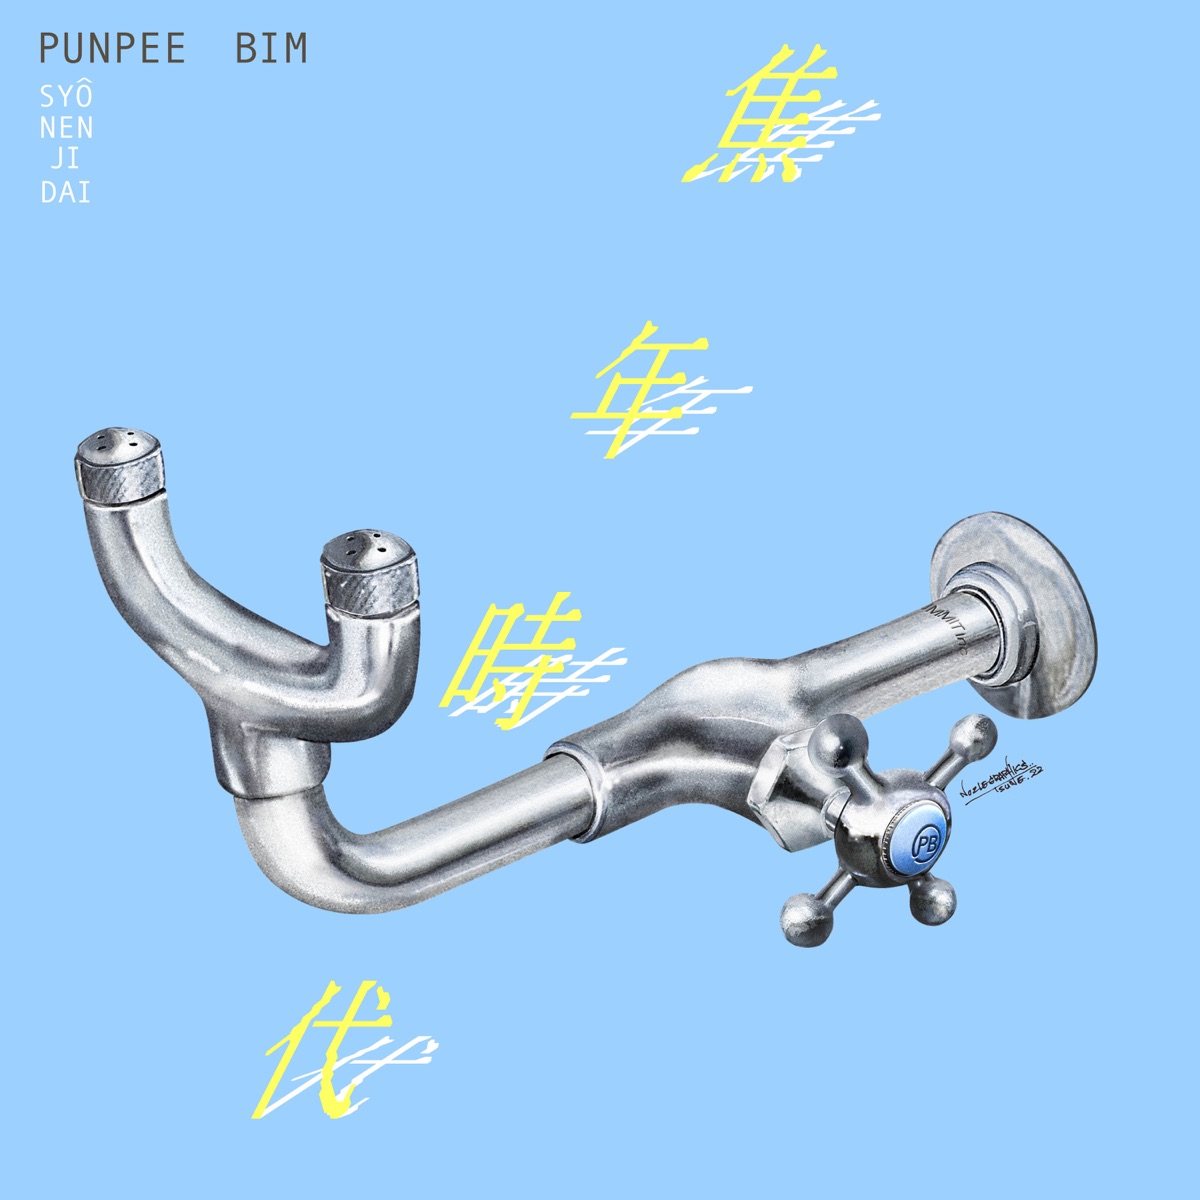 Cover art for『PUNPEE & BIM - Kids Return』from the release『Boyhood』